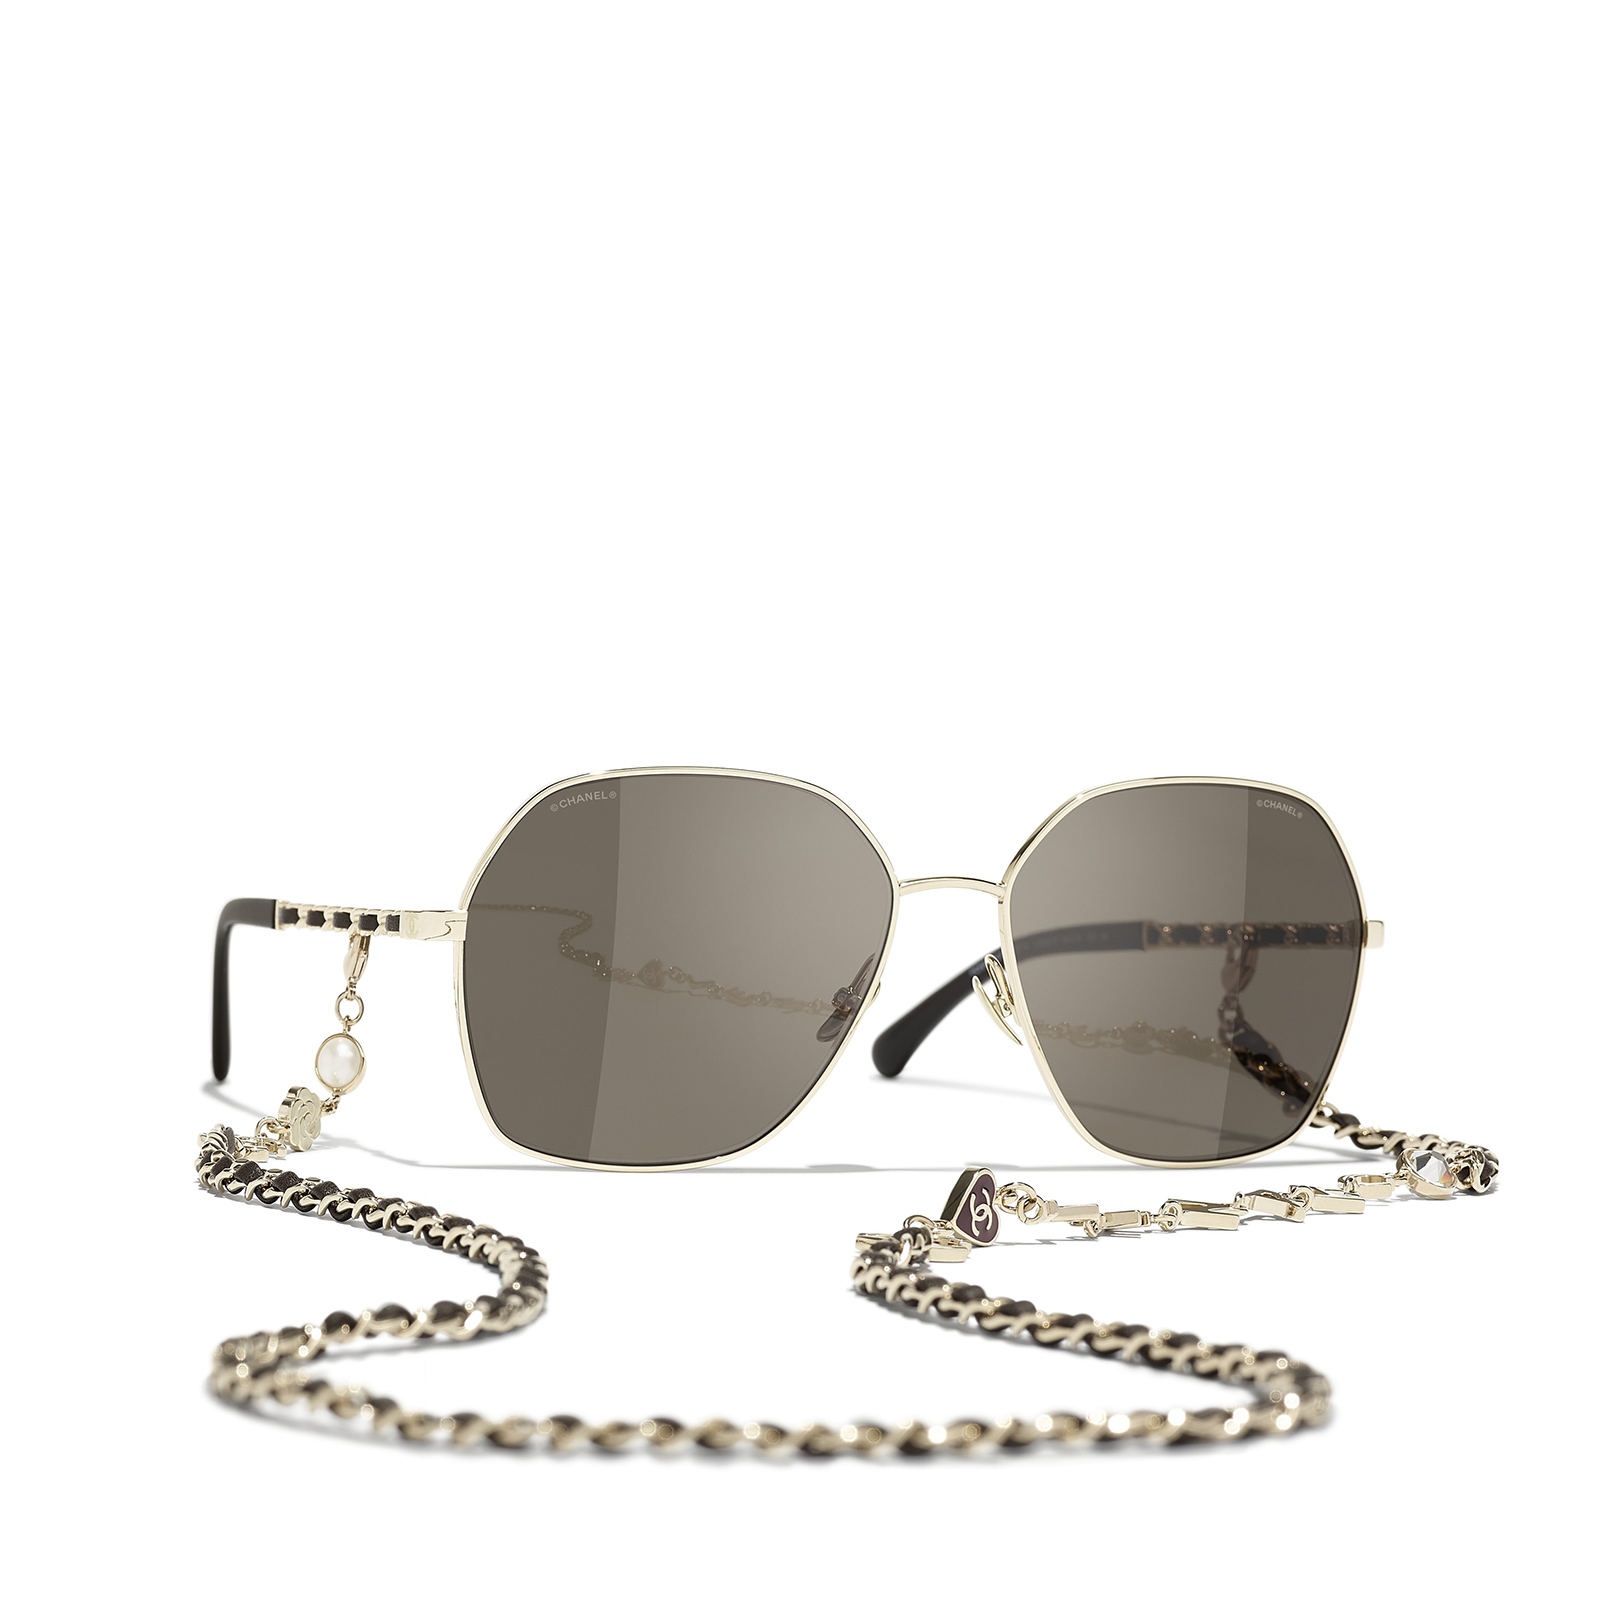 CHANEL square Sunglasses C395/3 Gold & Brown